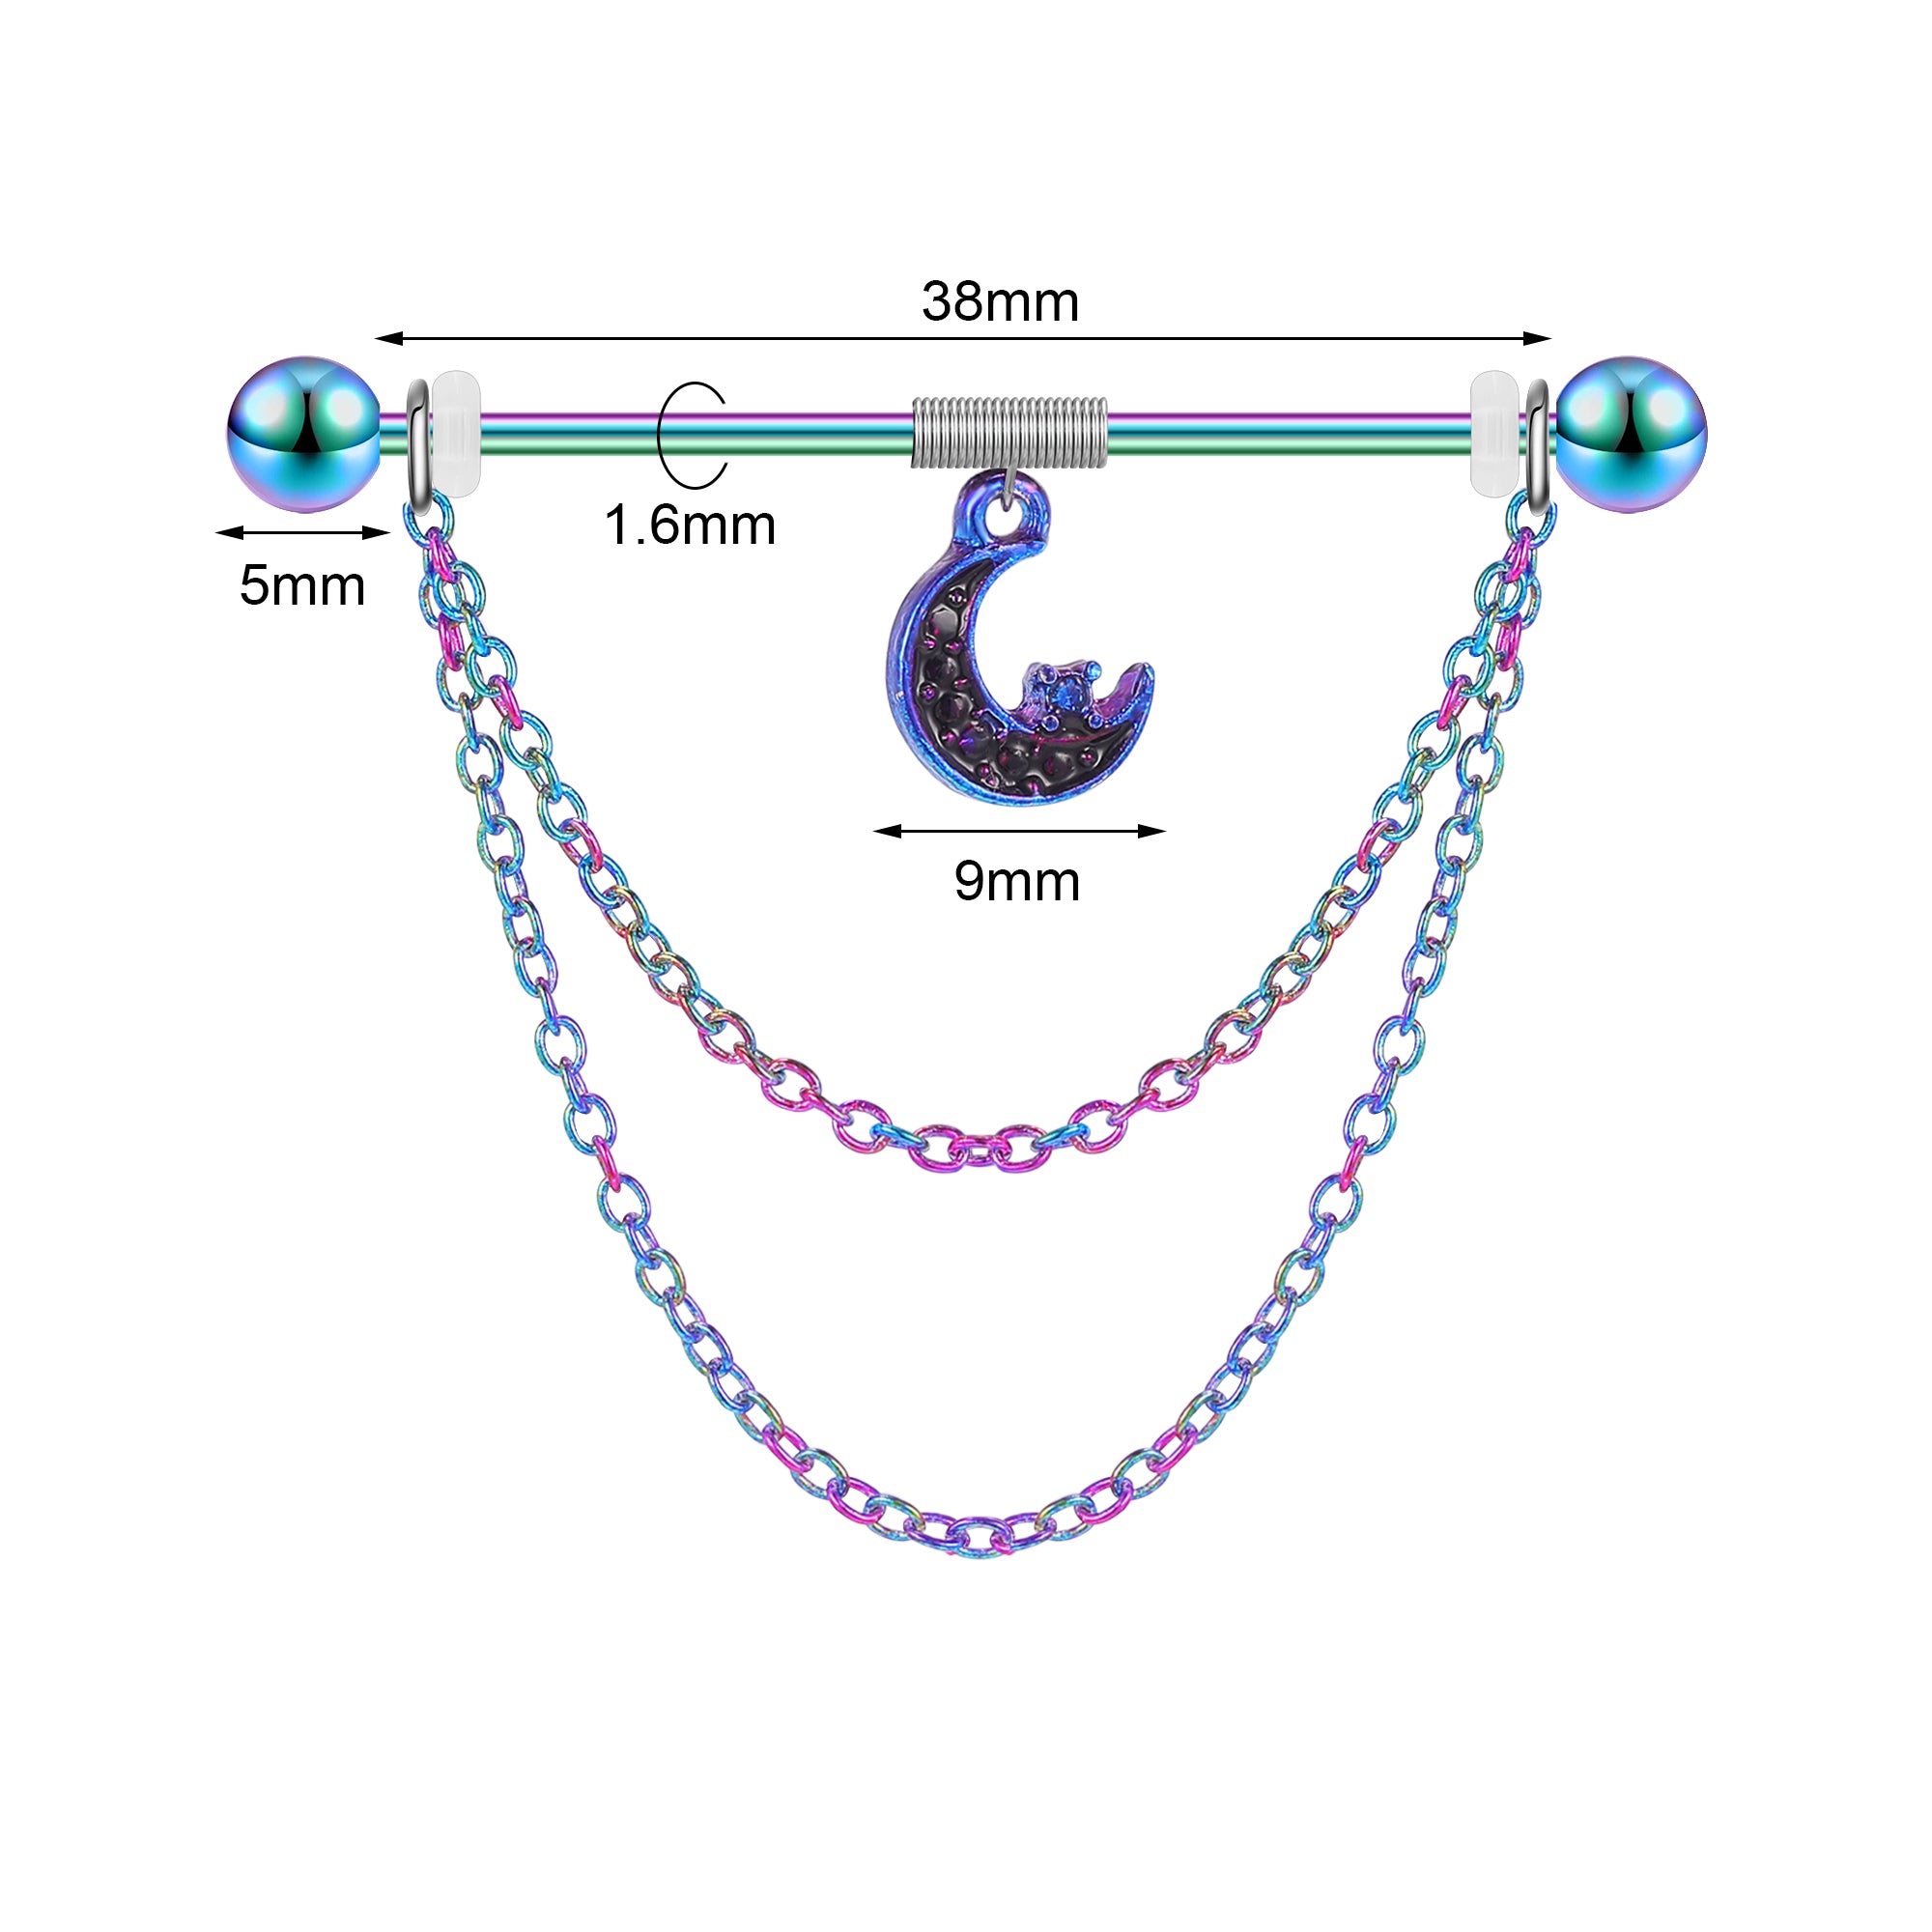 14g-moon-industrial-barbell-earring-dangle-chain-ear-helix-piercing